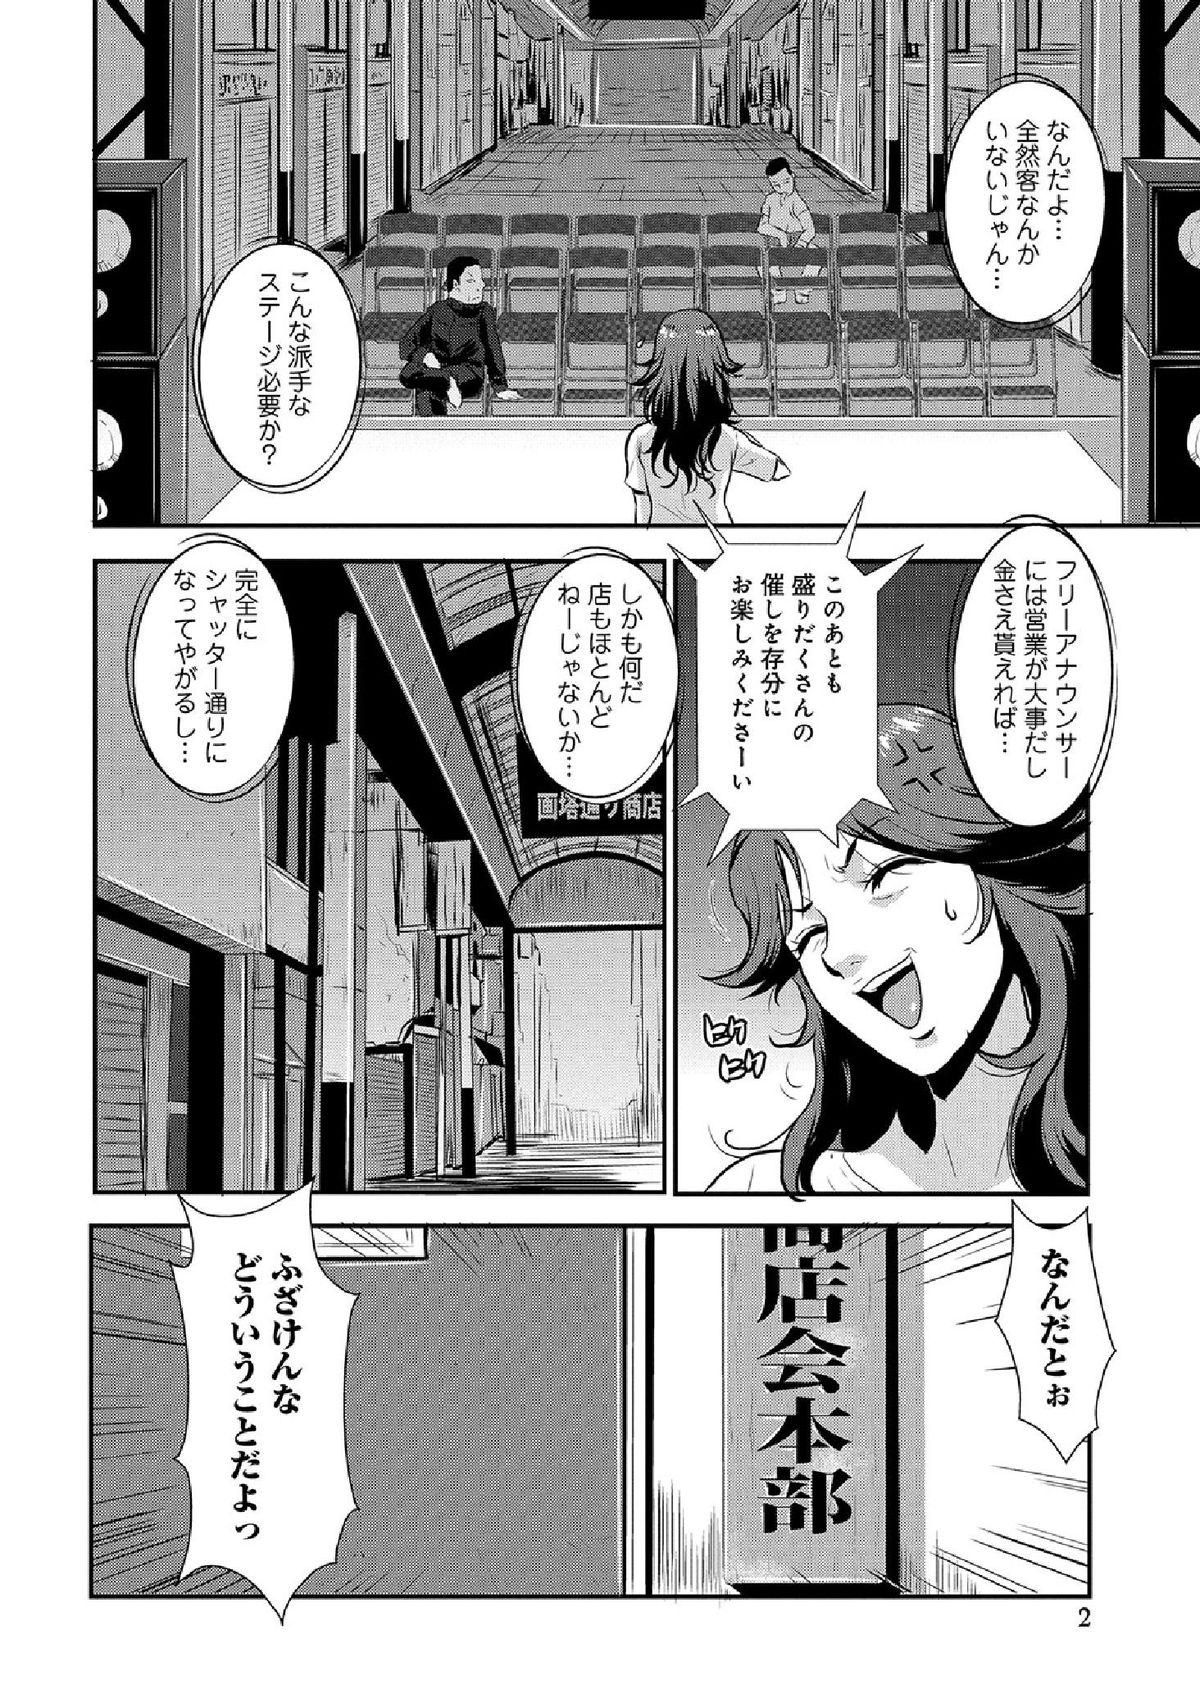 WEB Han Comic Geki Yaba! Vol.52 149